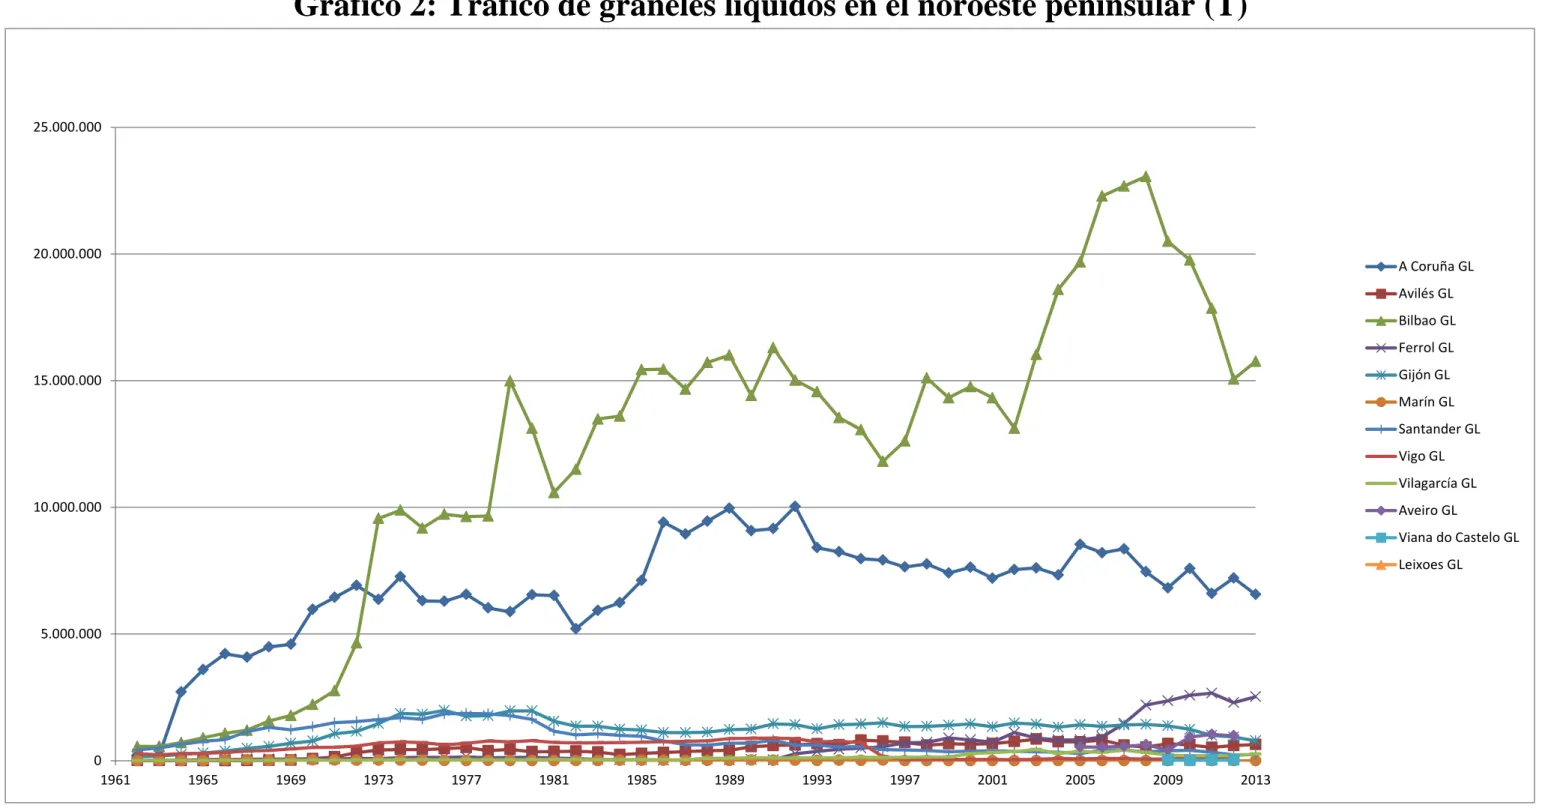 Gráfico 2: Tráfico de graneles líquidos en el noroeste peninsular (T) 